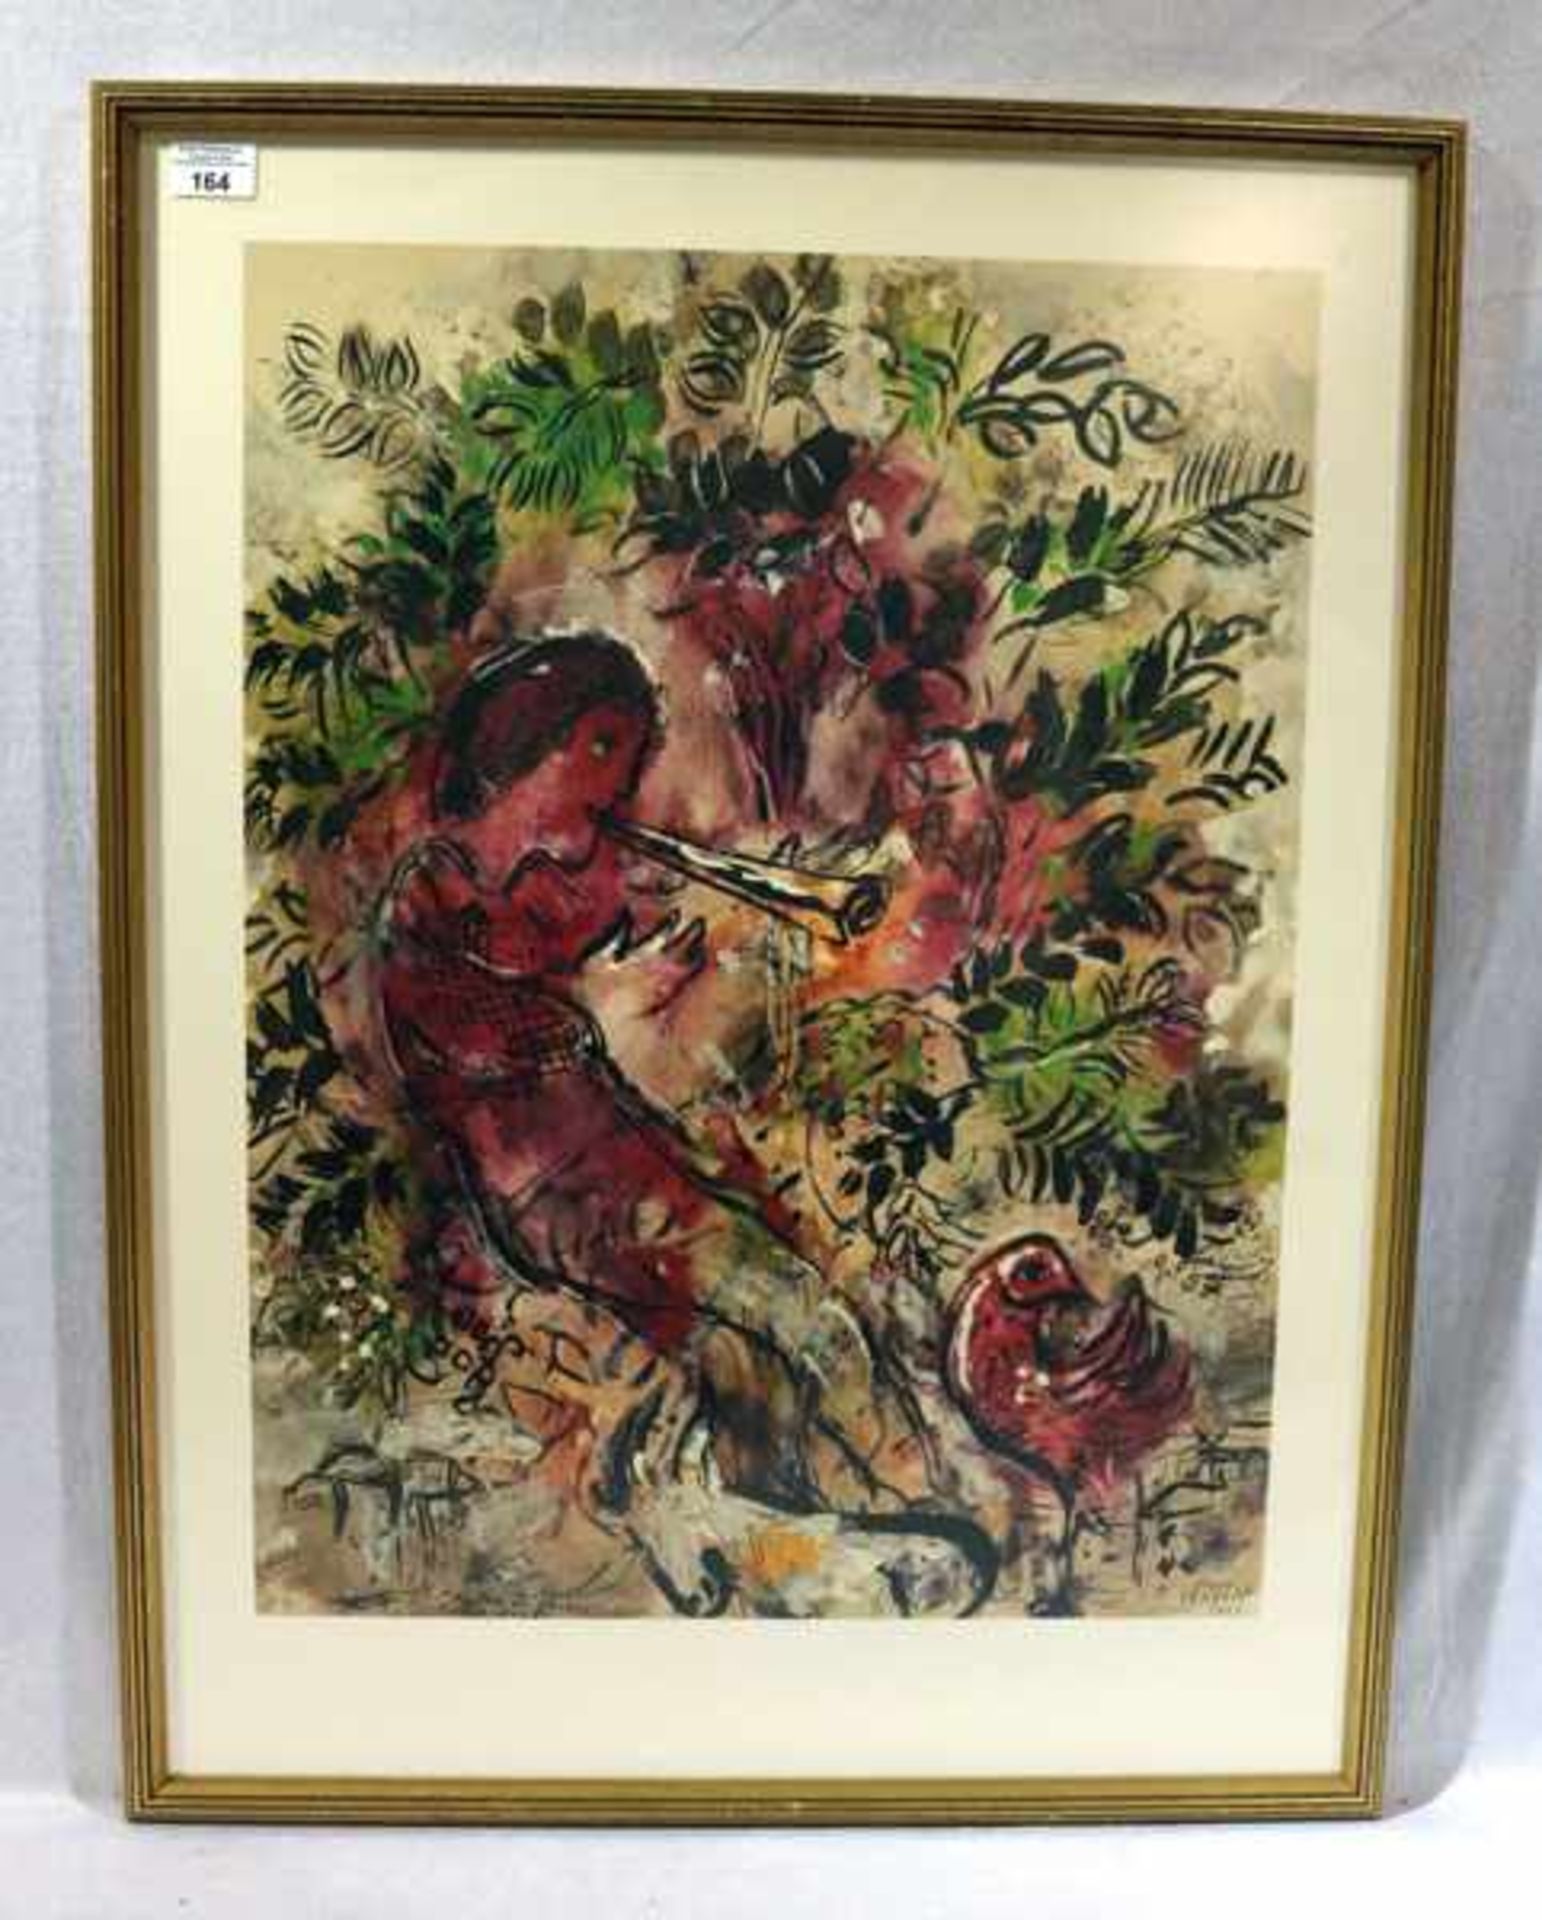 Druck 'Flötenspieler', nach Chagall, unter Glas gerahmt, Rahmen leicht bestossen, incl. Rahmen 83 cm